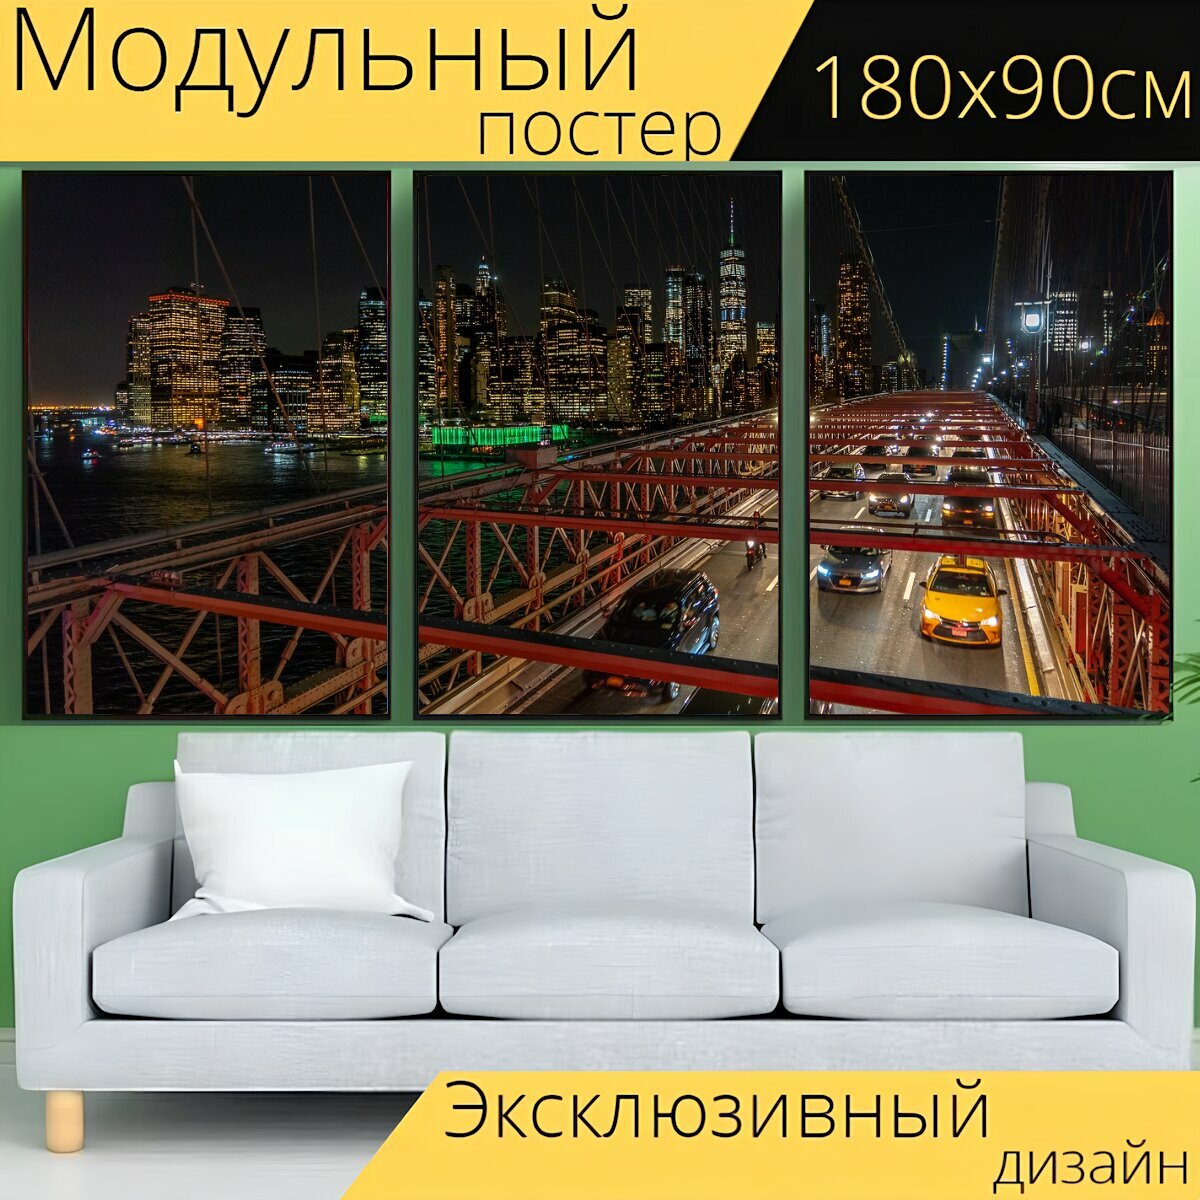 Модульный постер "Нью йорк, мост, манхэттен" 180 x 90 см. для интерьера